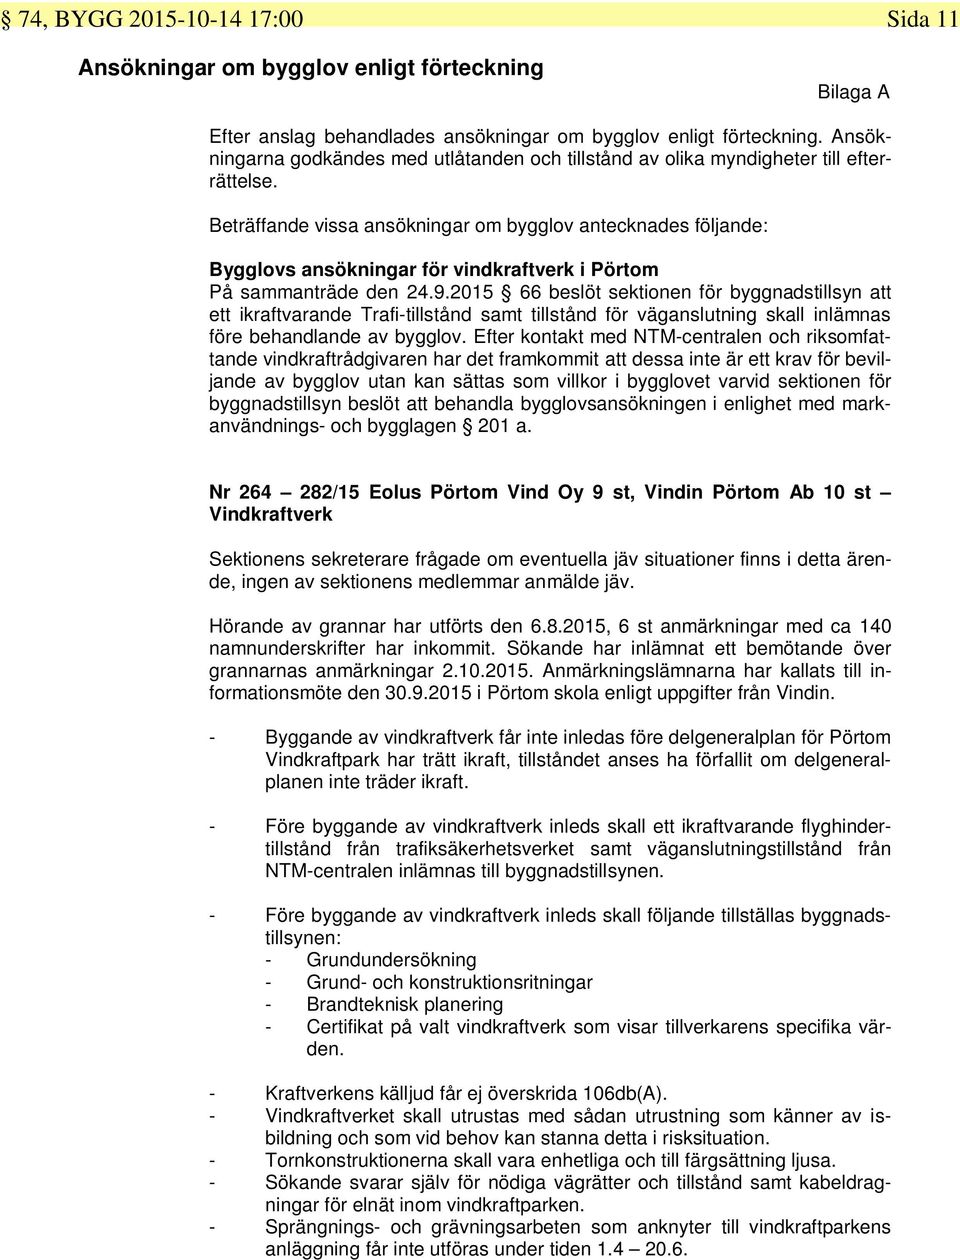 Beträffande vissa ansökningar om bygglov antecknades följande: Bygglovs ansökningar för vindkraftverk i Pörtom På sammanträde den 24.9.